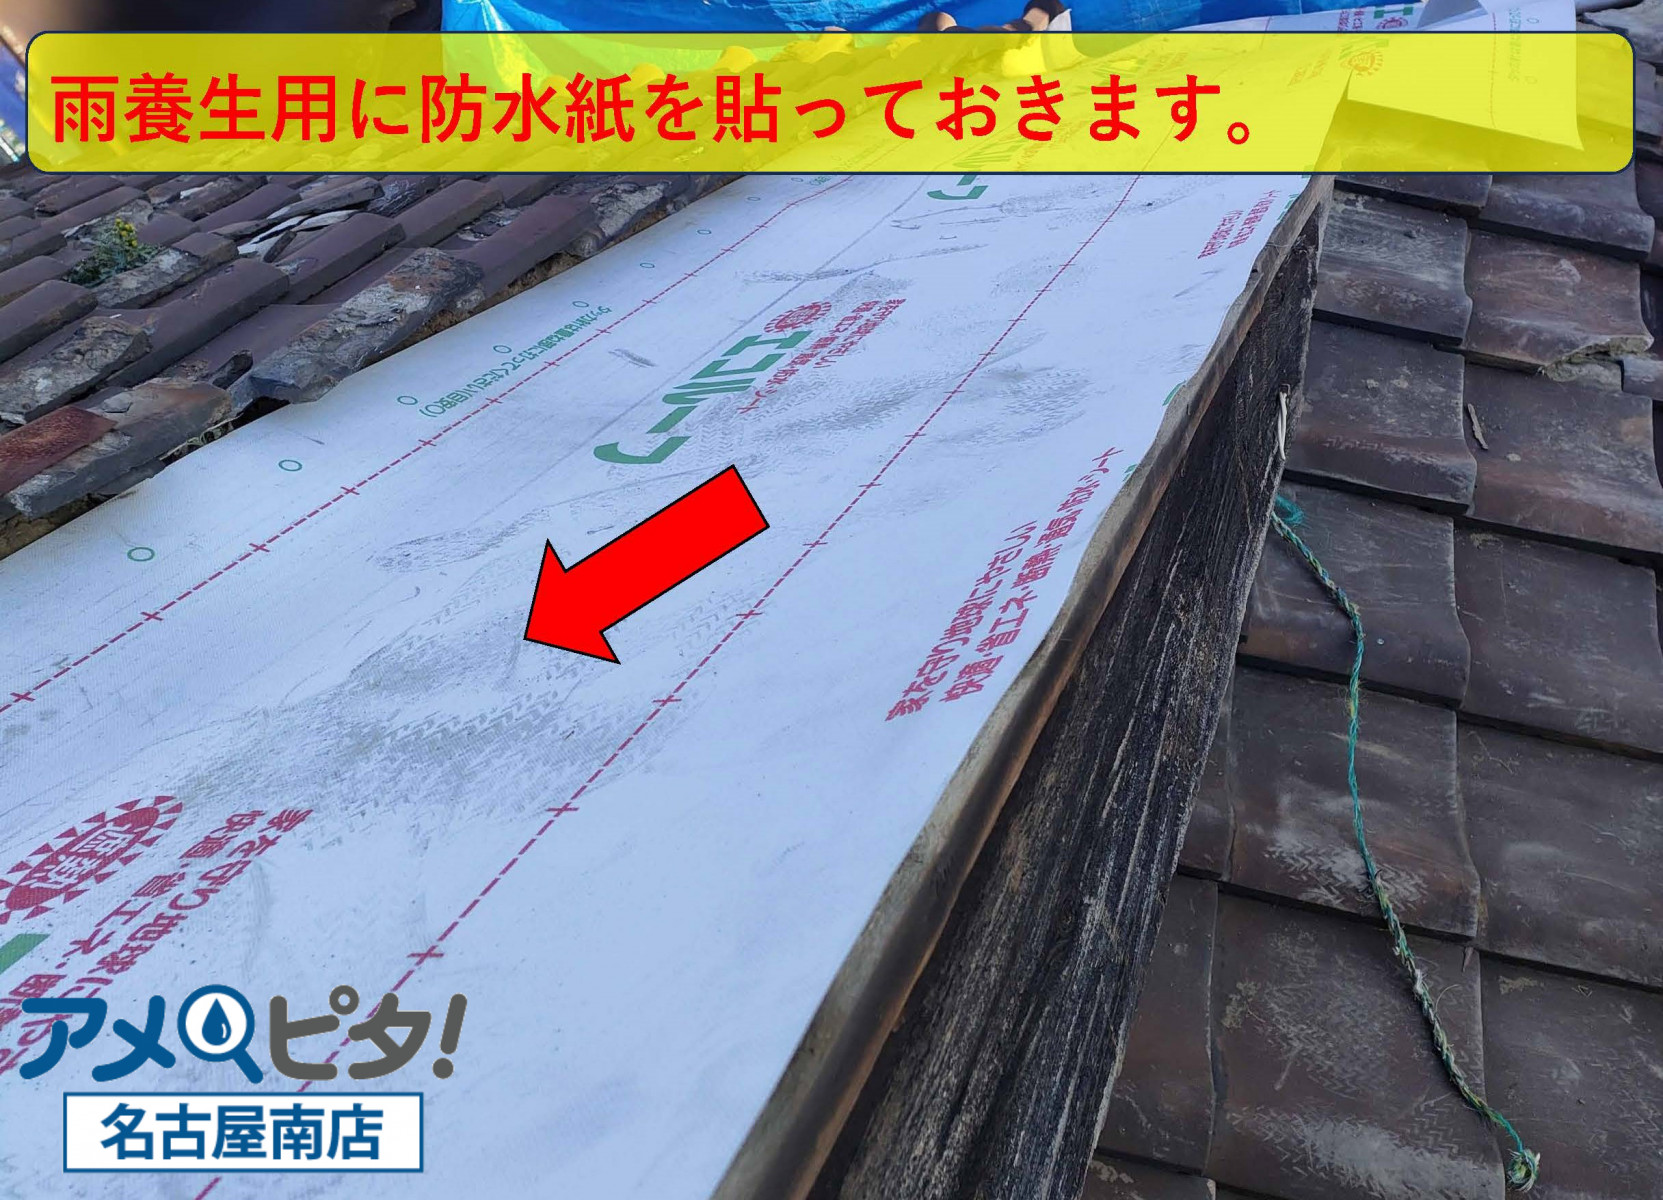 取付けた屋根地合板の上から重ねるように防水紙を貼って行きます。